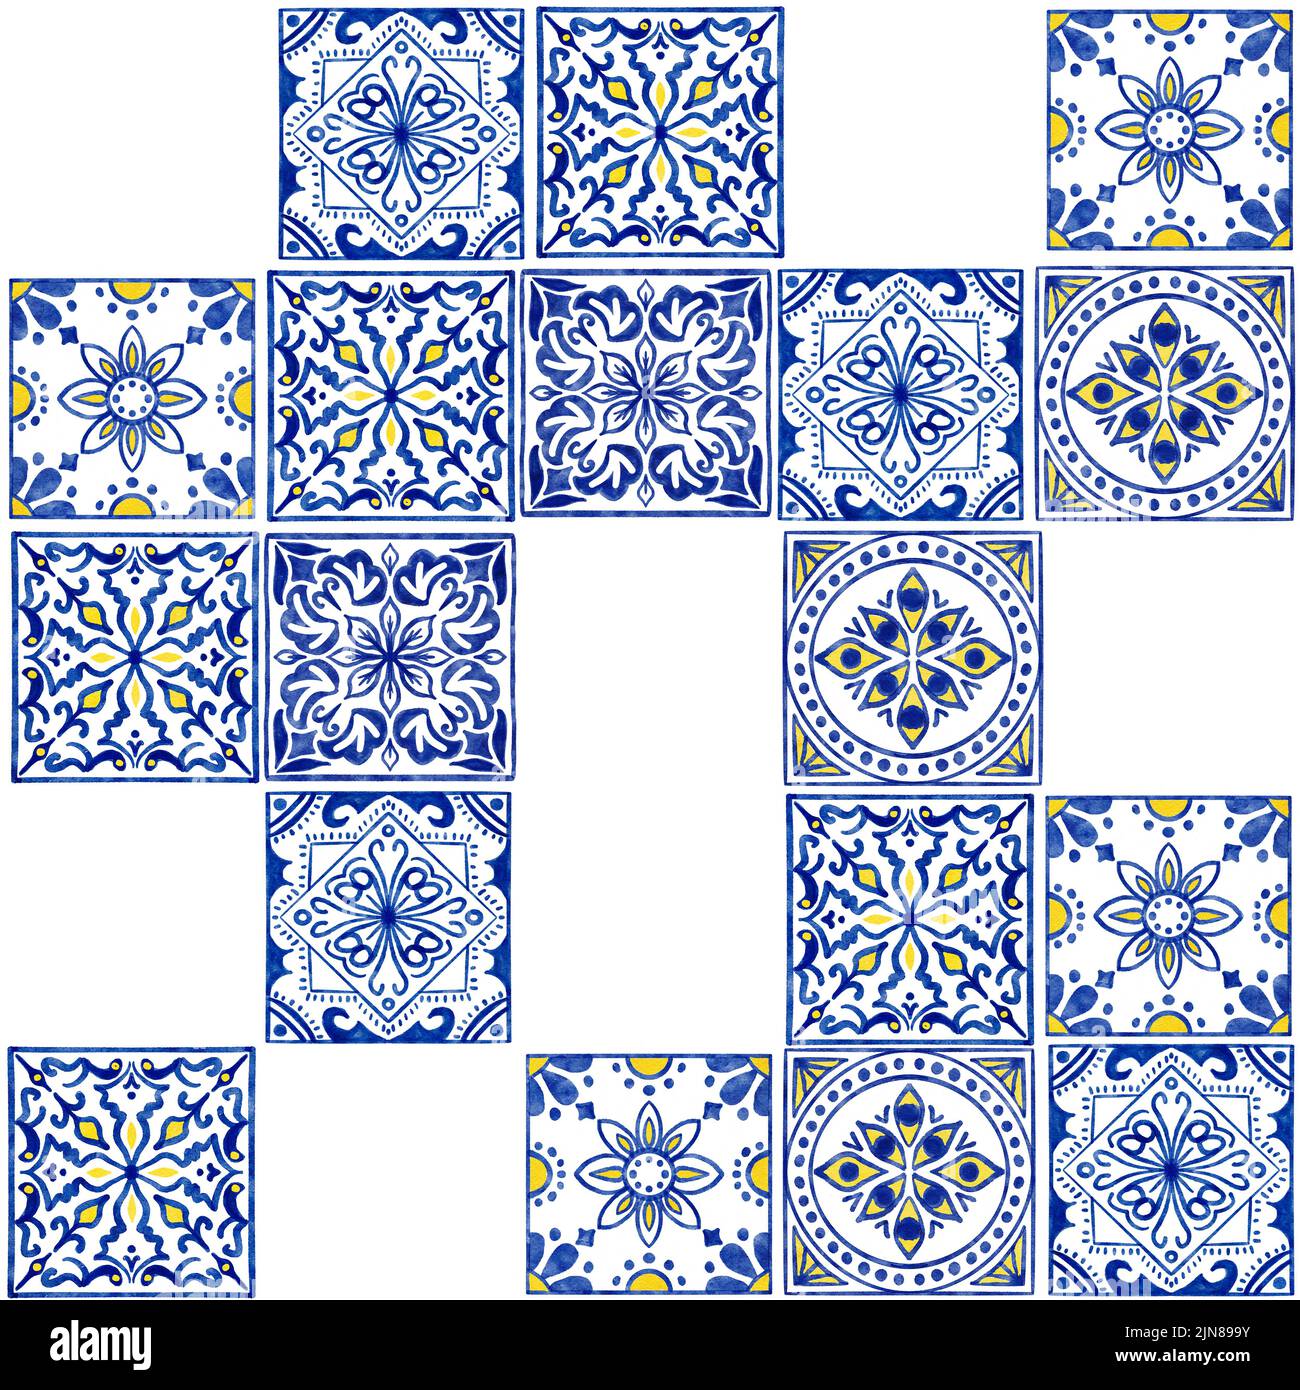 Handgezeichnetes, nahtloses Aquarell-Muster mit blauen weißen Azulejo-portugiesischen Keramikfliesen. Ethnische portugal geomentric Indigo wiederholte Wand Boden Ornament. Arabischer ornamentaler Hintergrund Stockfoto